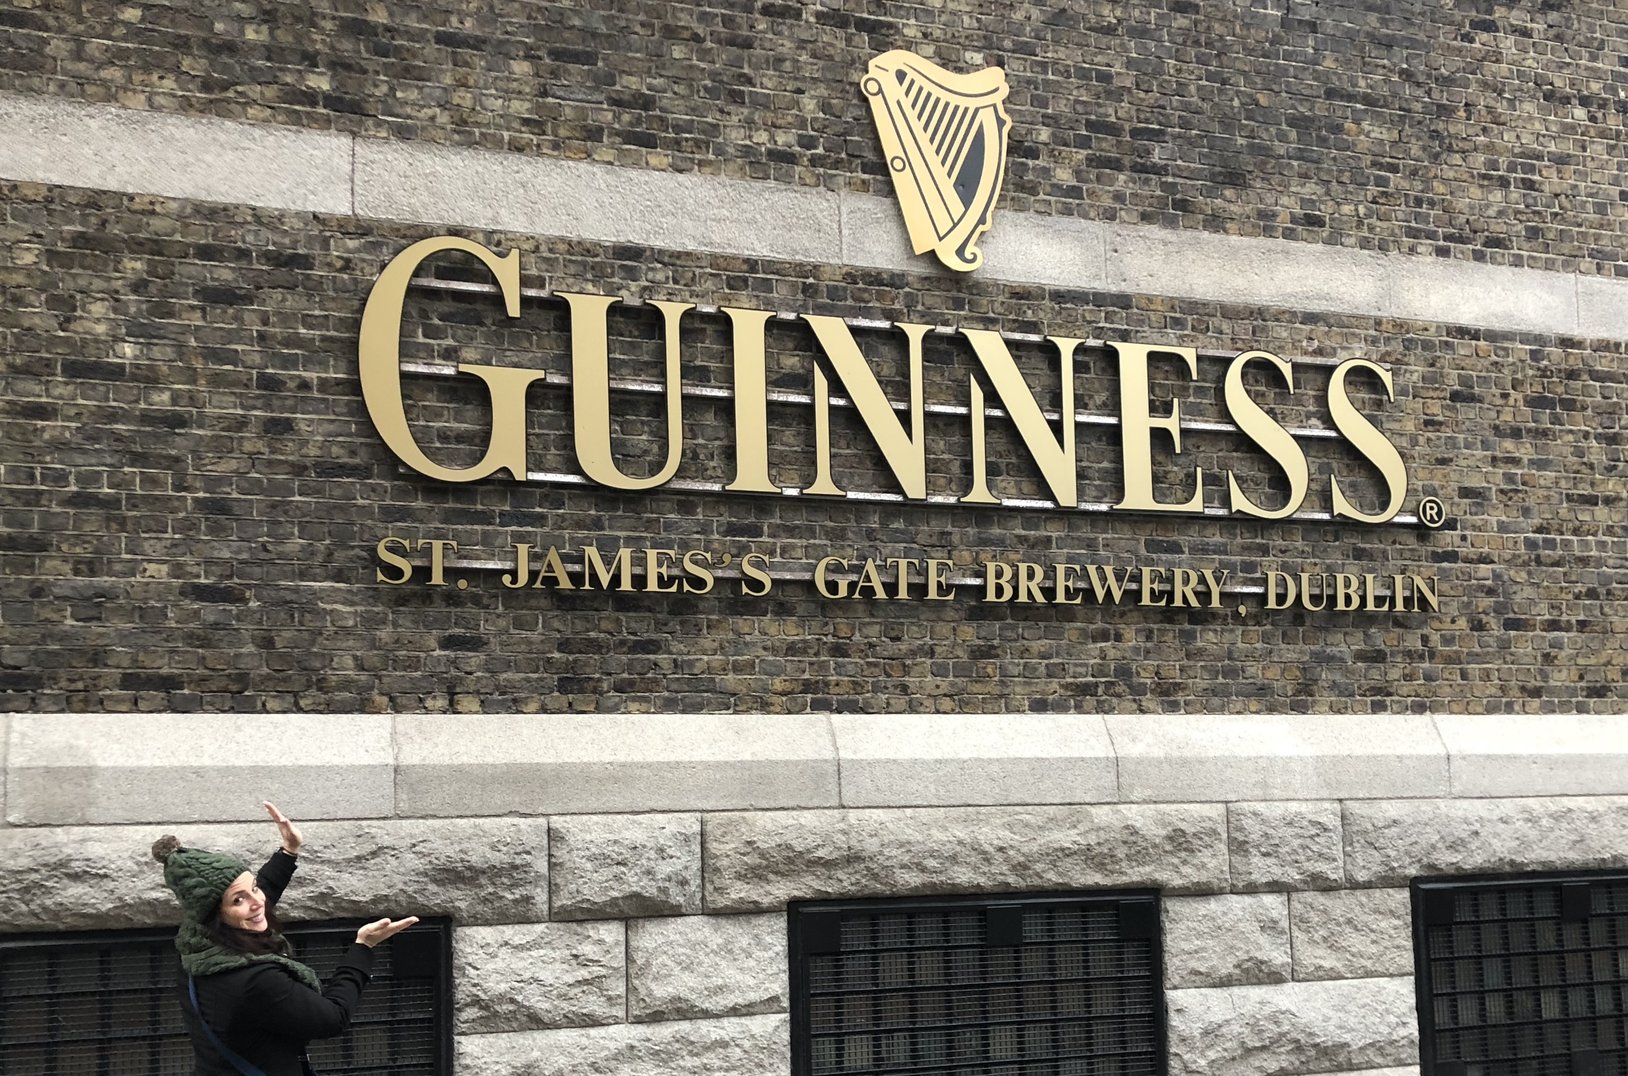 Kim at the Guinness storehouse in Dublin